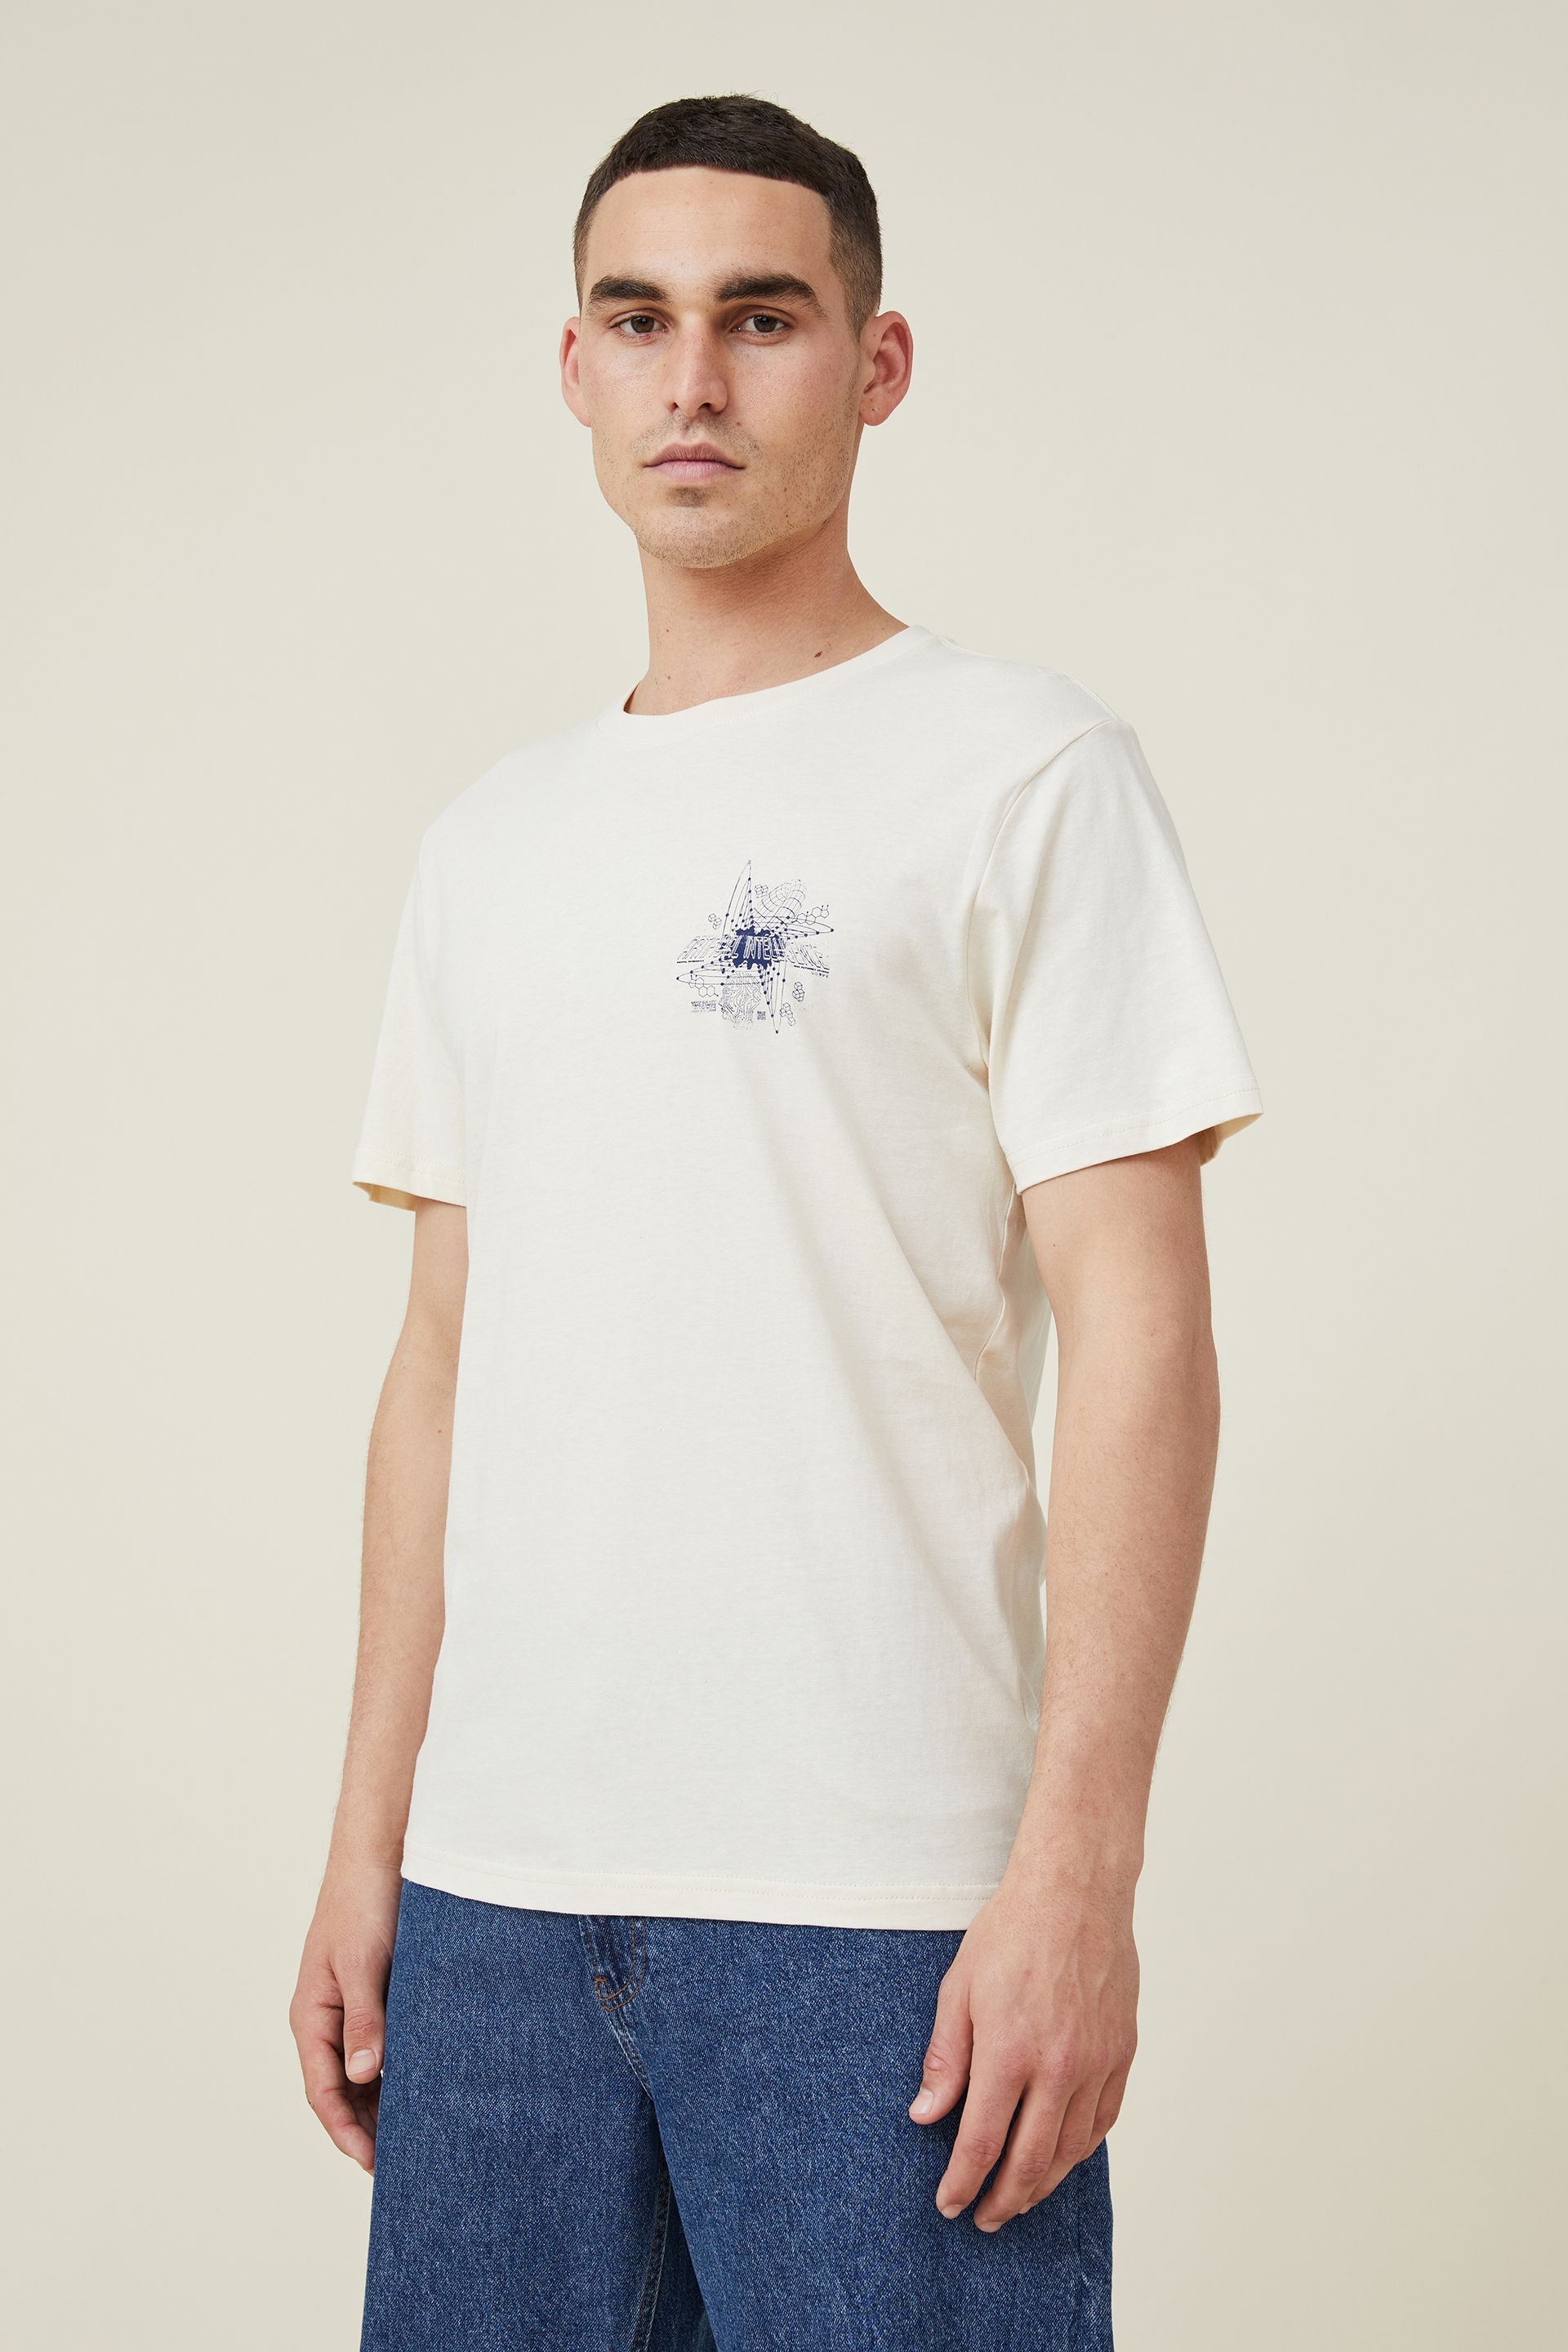 Cotton On Men - Tbar Art T-Shirt - Bisque/artificial intelligence